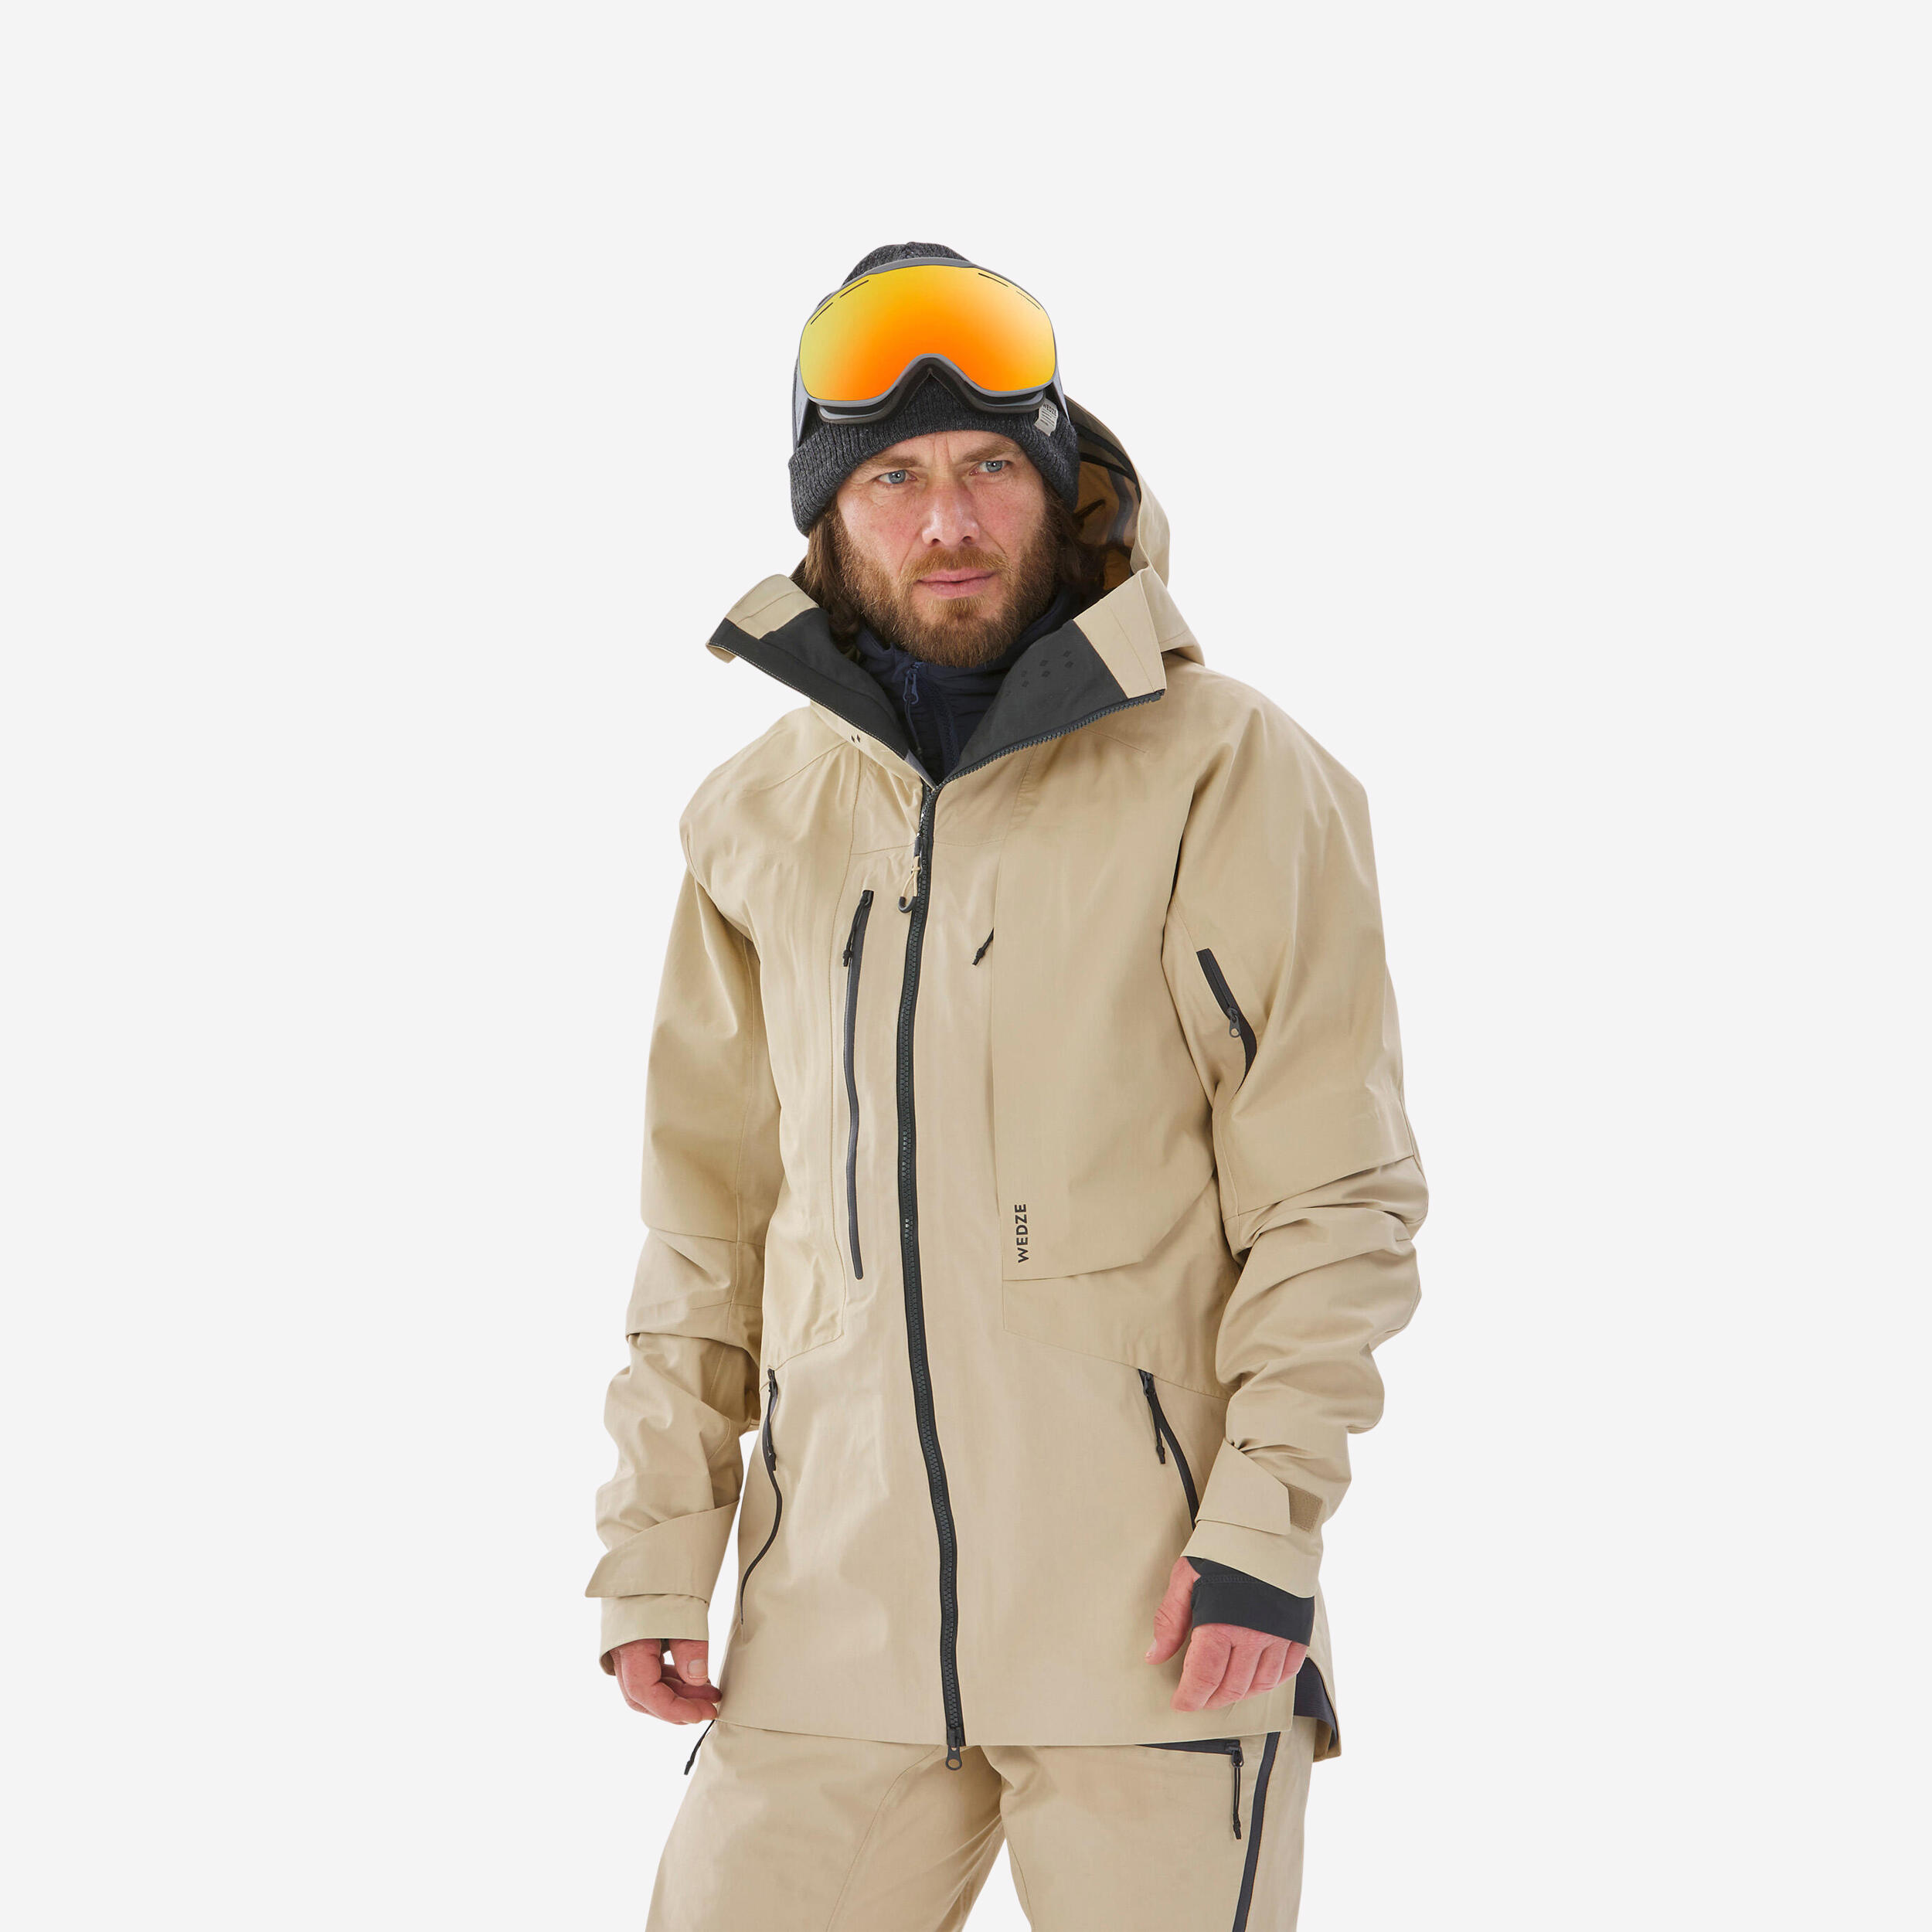 Men’s Ski Jacket - FR 900 Beige